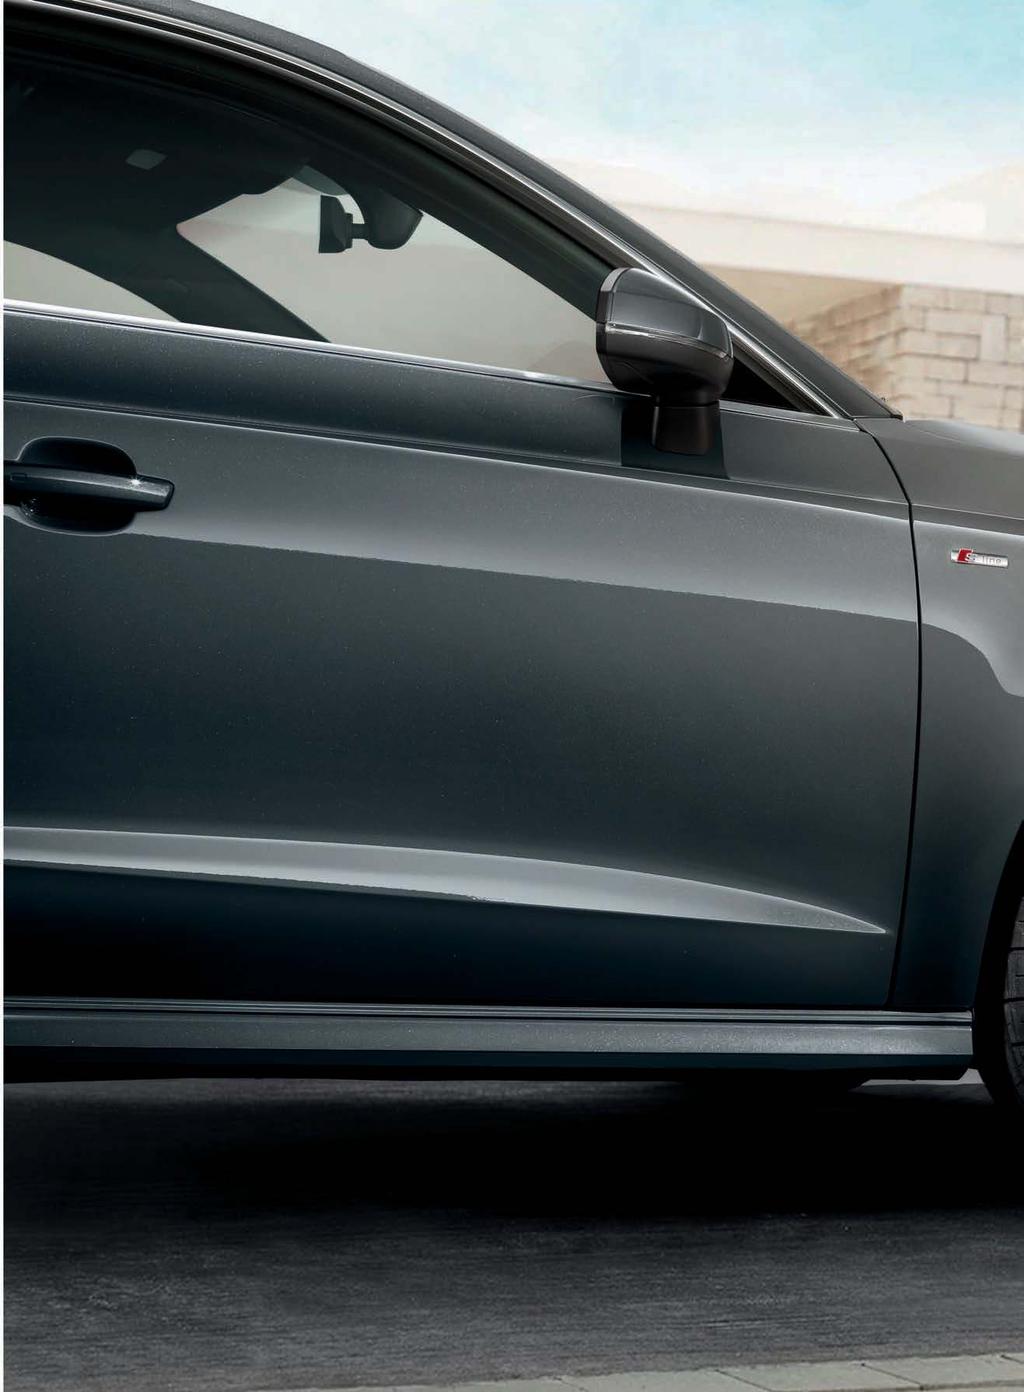 4 5 Audi Service Reifengarantie 36 Monate Schutz im Schadensfall Audi Sommerkompletträder ** Rundum geschützt: Beim Kauf von Reifen und Kompletträdern profitieren Sie von der kostenlosen Audi